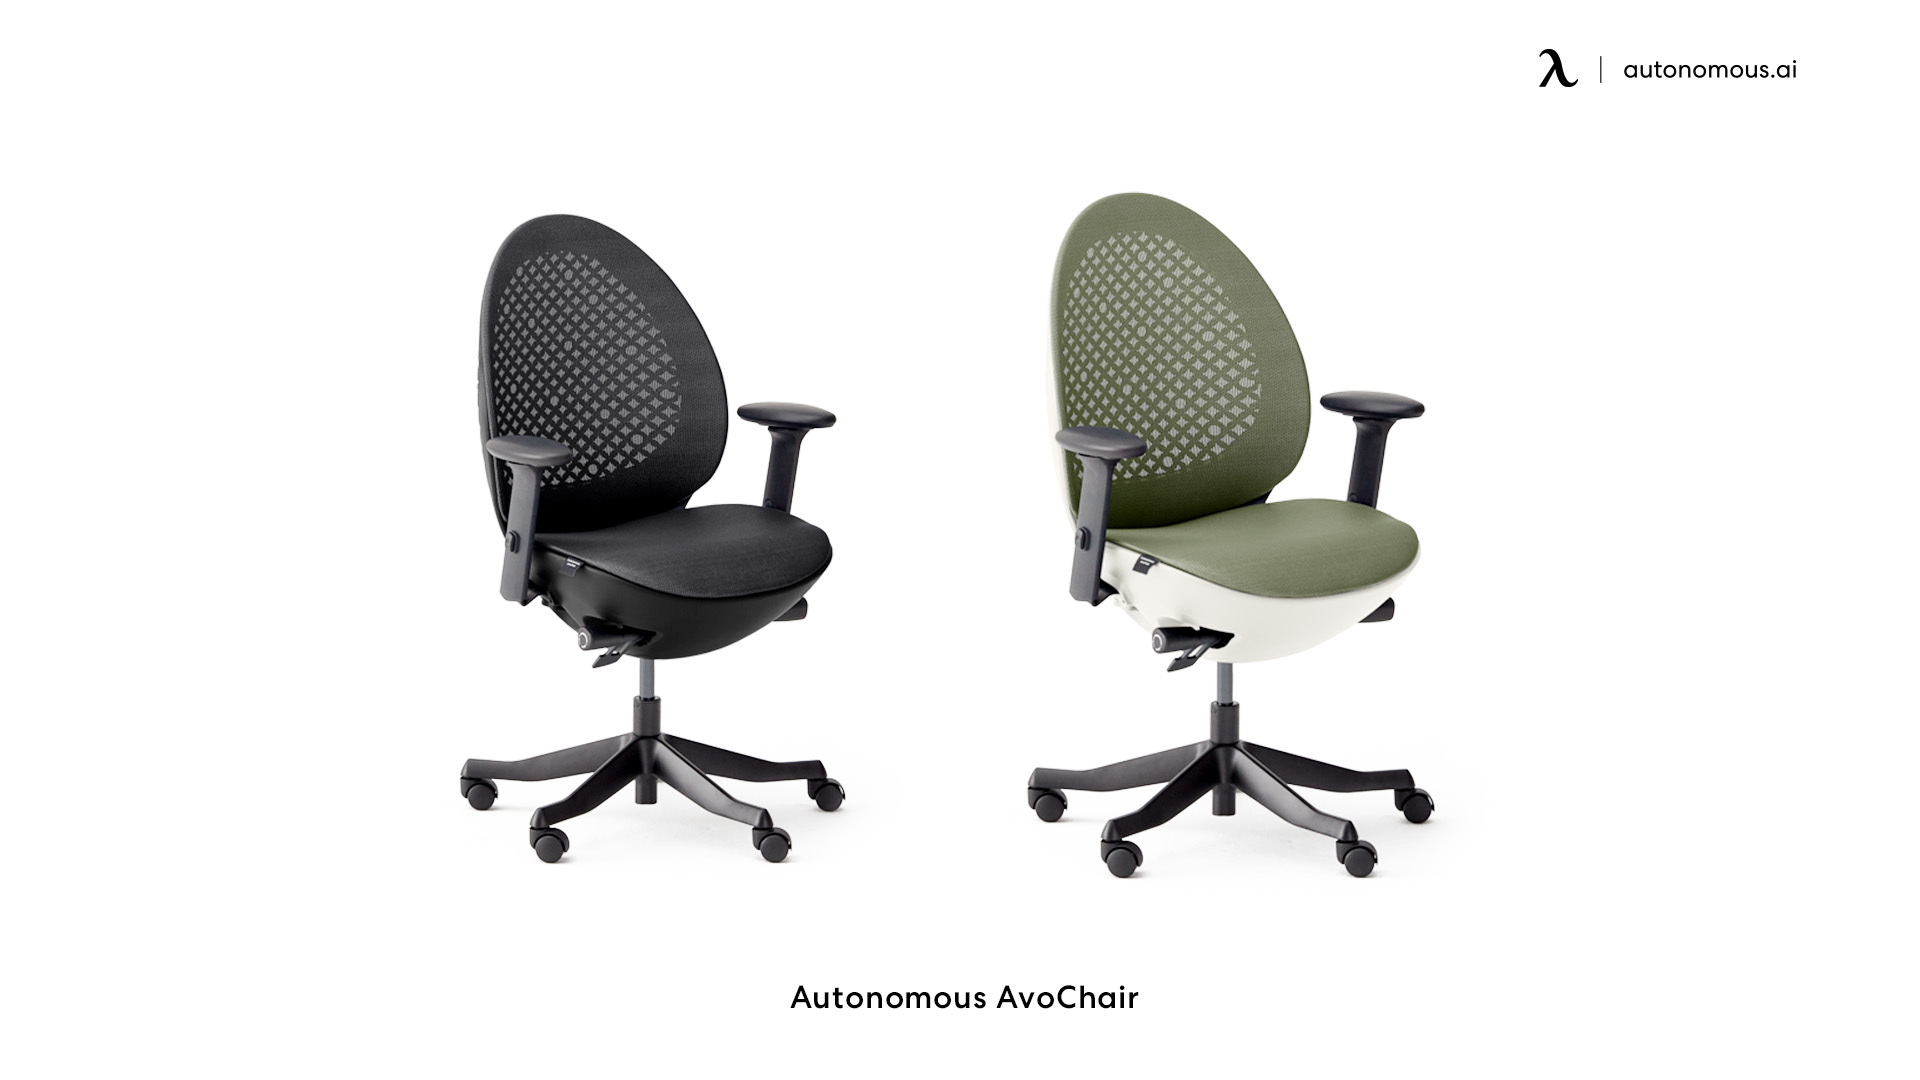 Autonomous AvoChair heavy duty office chair